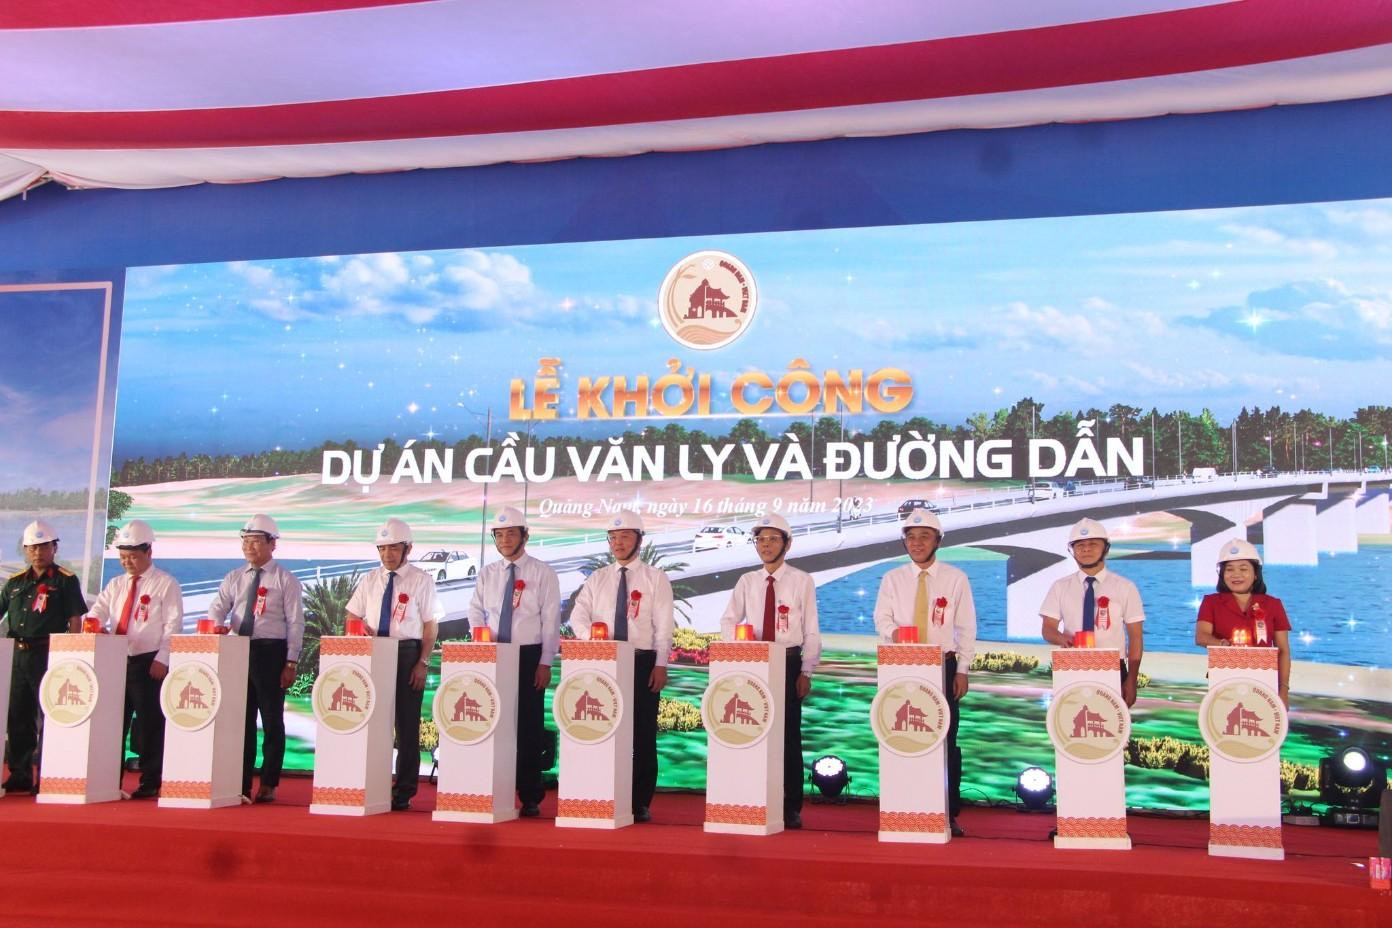 Quảng Nam: Khởi công dự án cầu Văn Ly và đường dẫn hơn 570 tỷ đồng